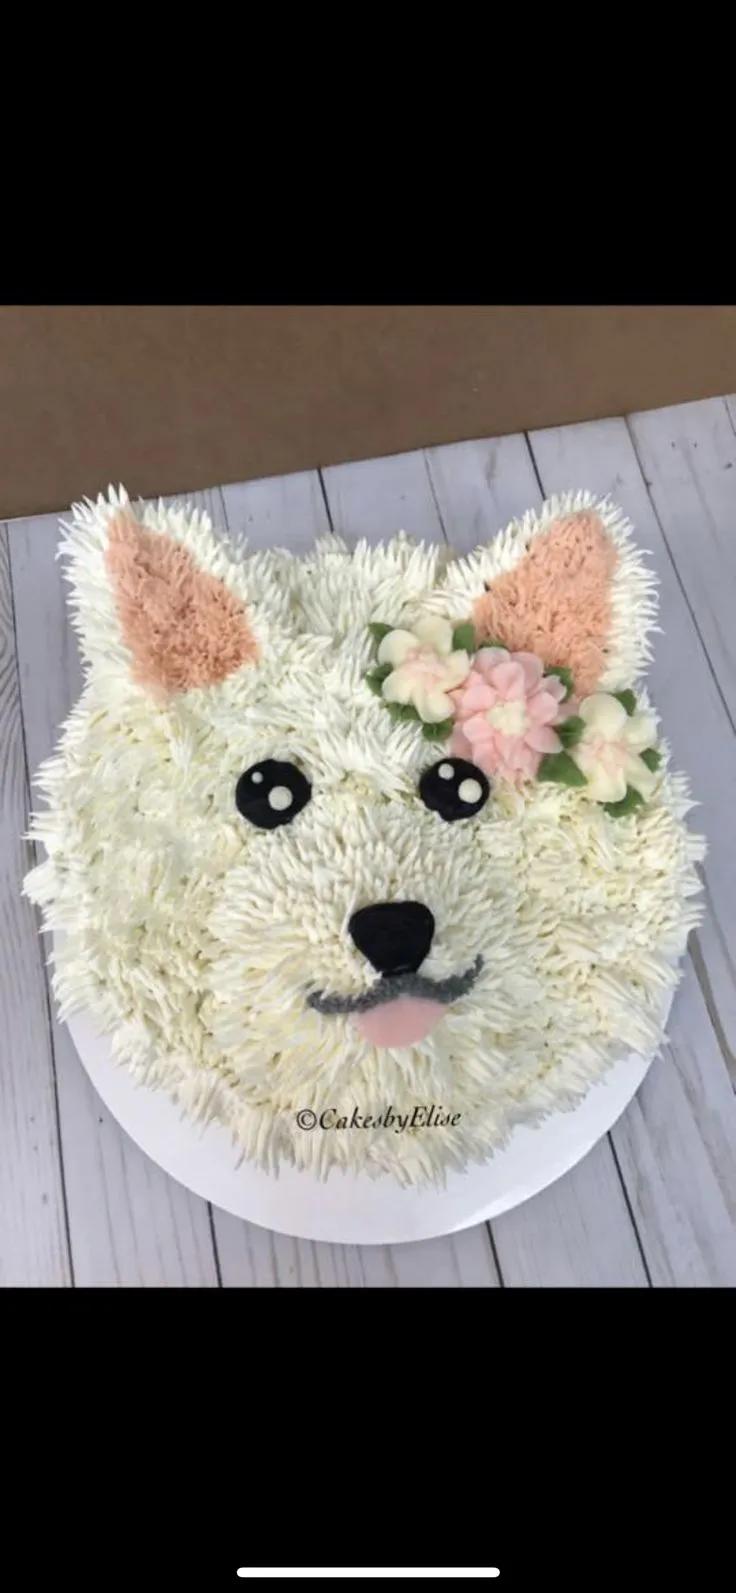 Dog birthday cake | Geburtstagskuchen für hunde, Geburtstagskuchen ...